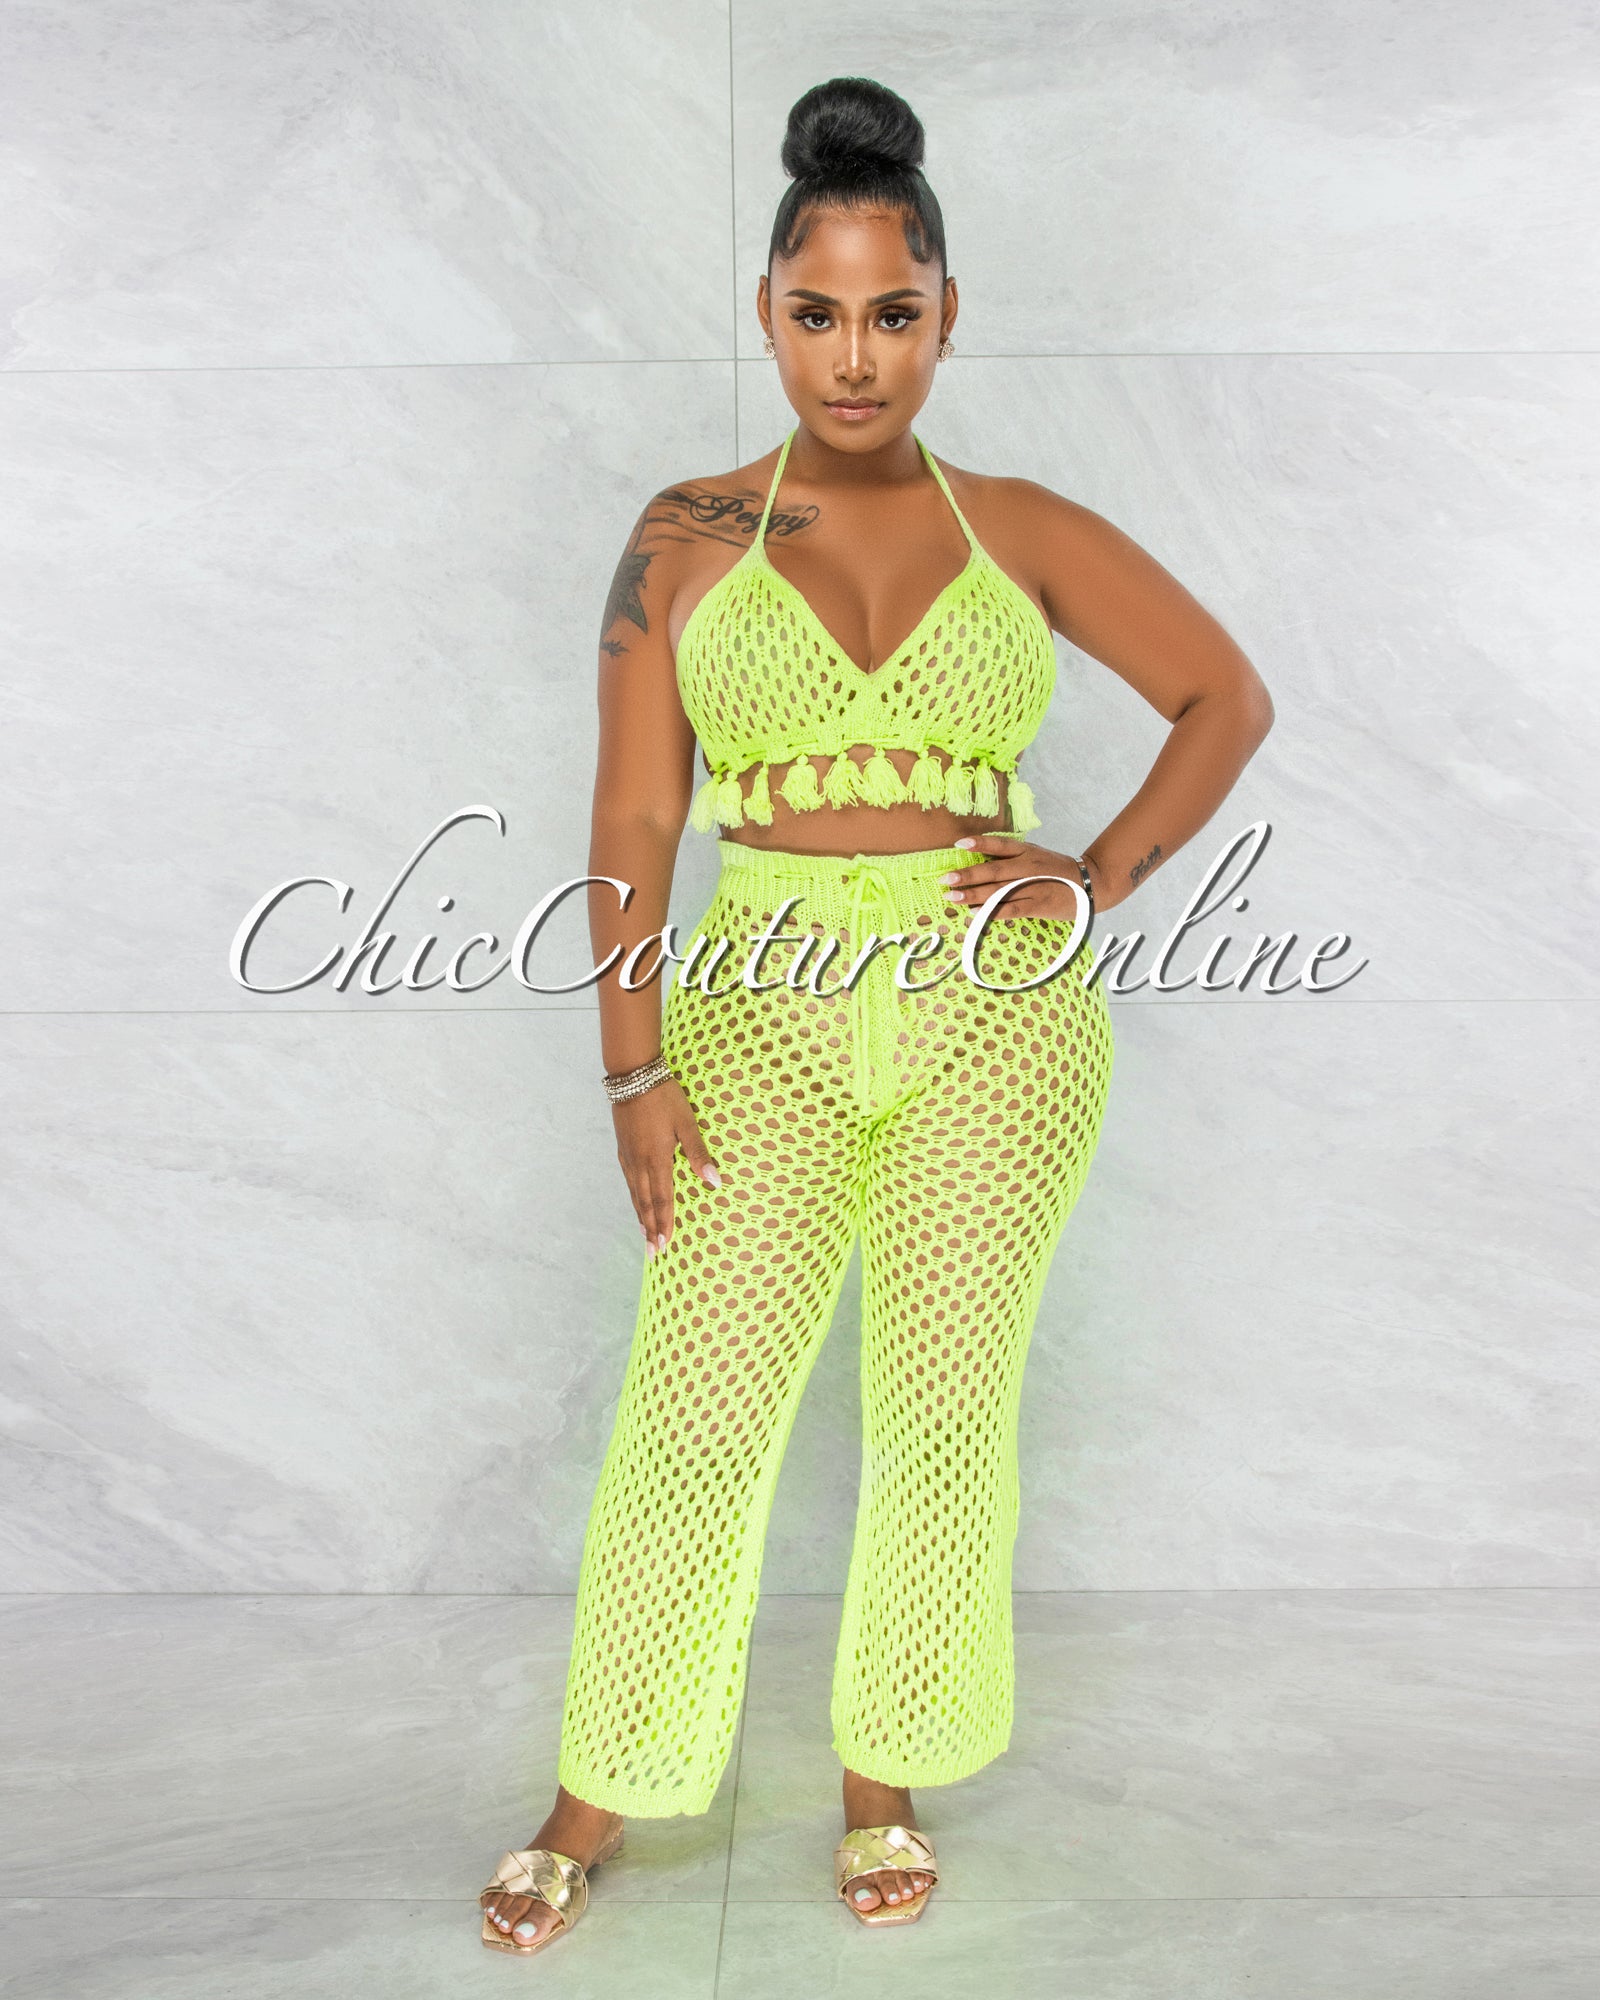 *Tessa Neon Green Crochet Tassels Top & Pants Cover-Up Set